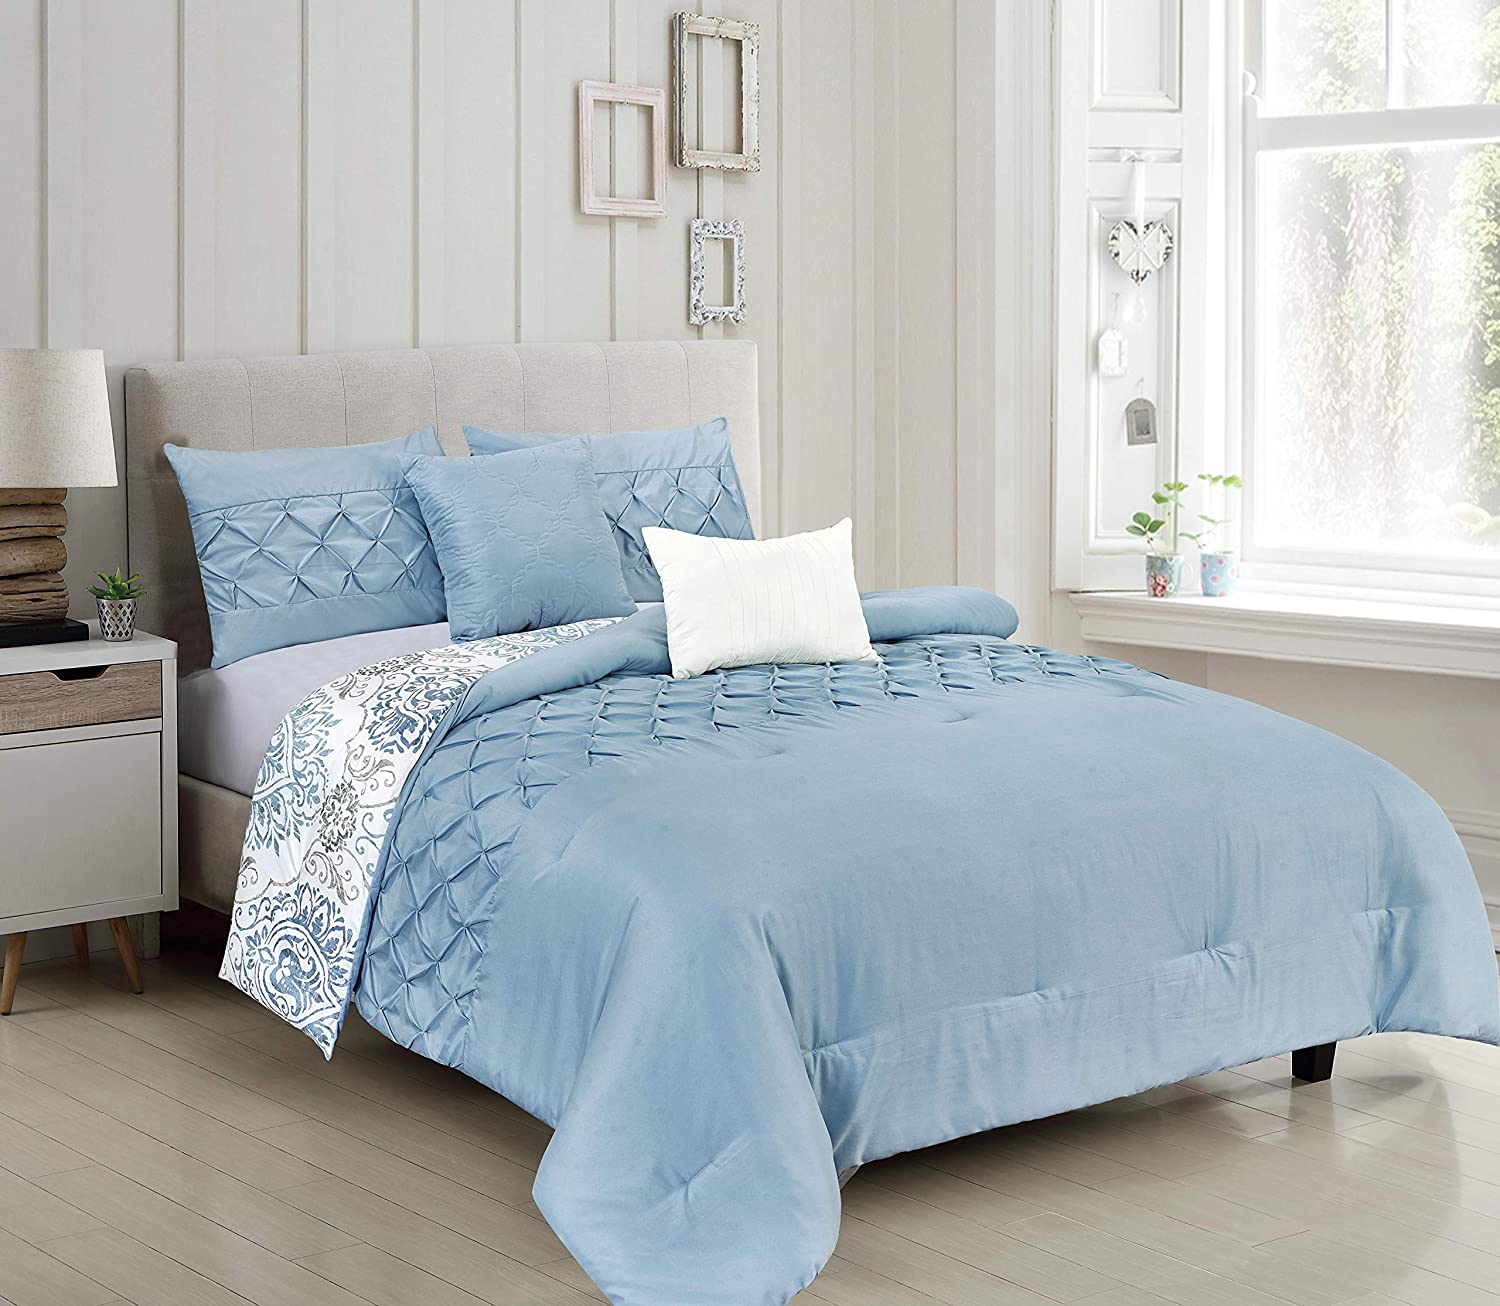 Fabiola 5pc Reversible Comforter Set - Linen Universe Co.